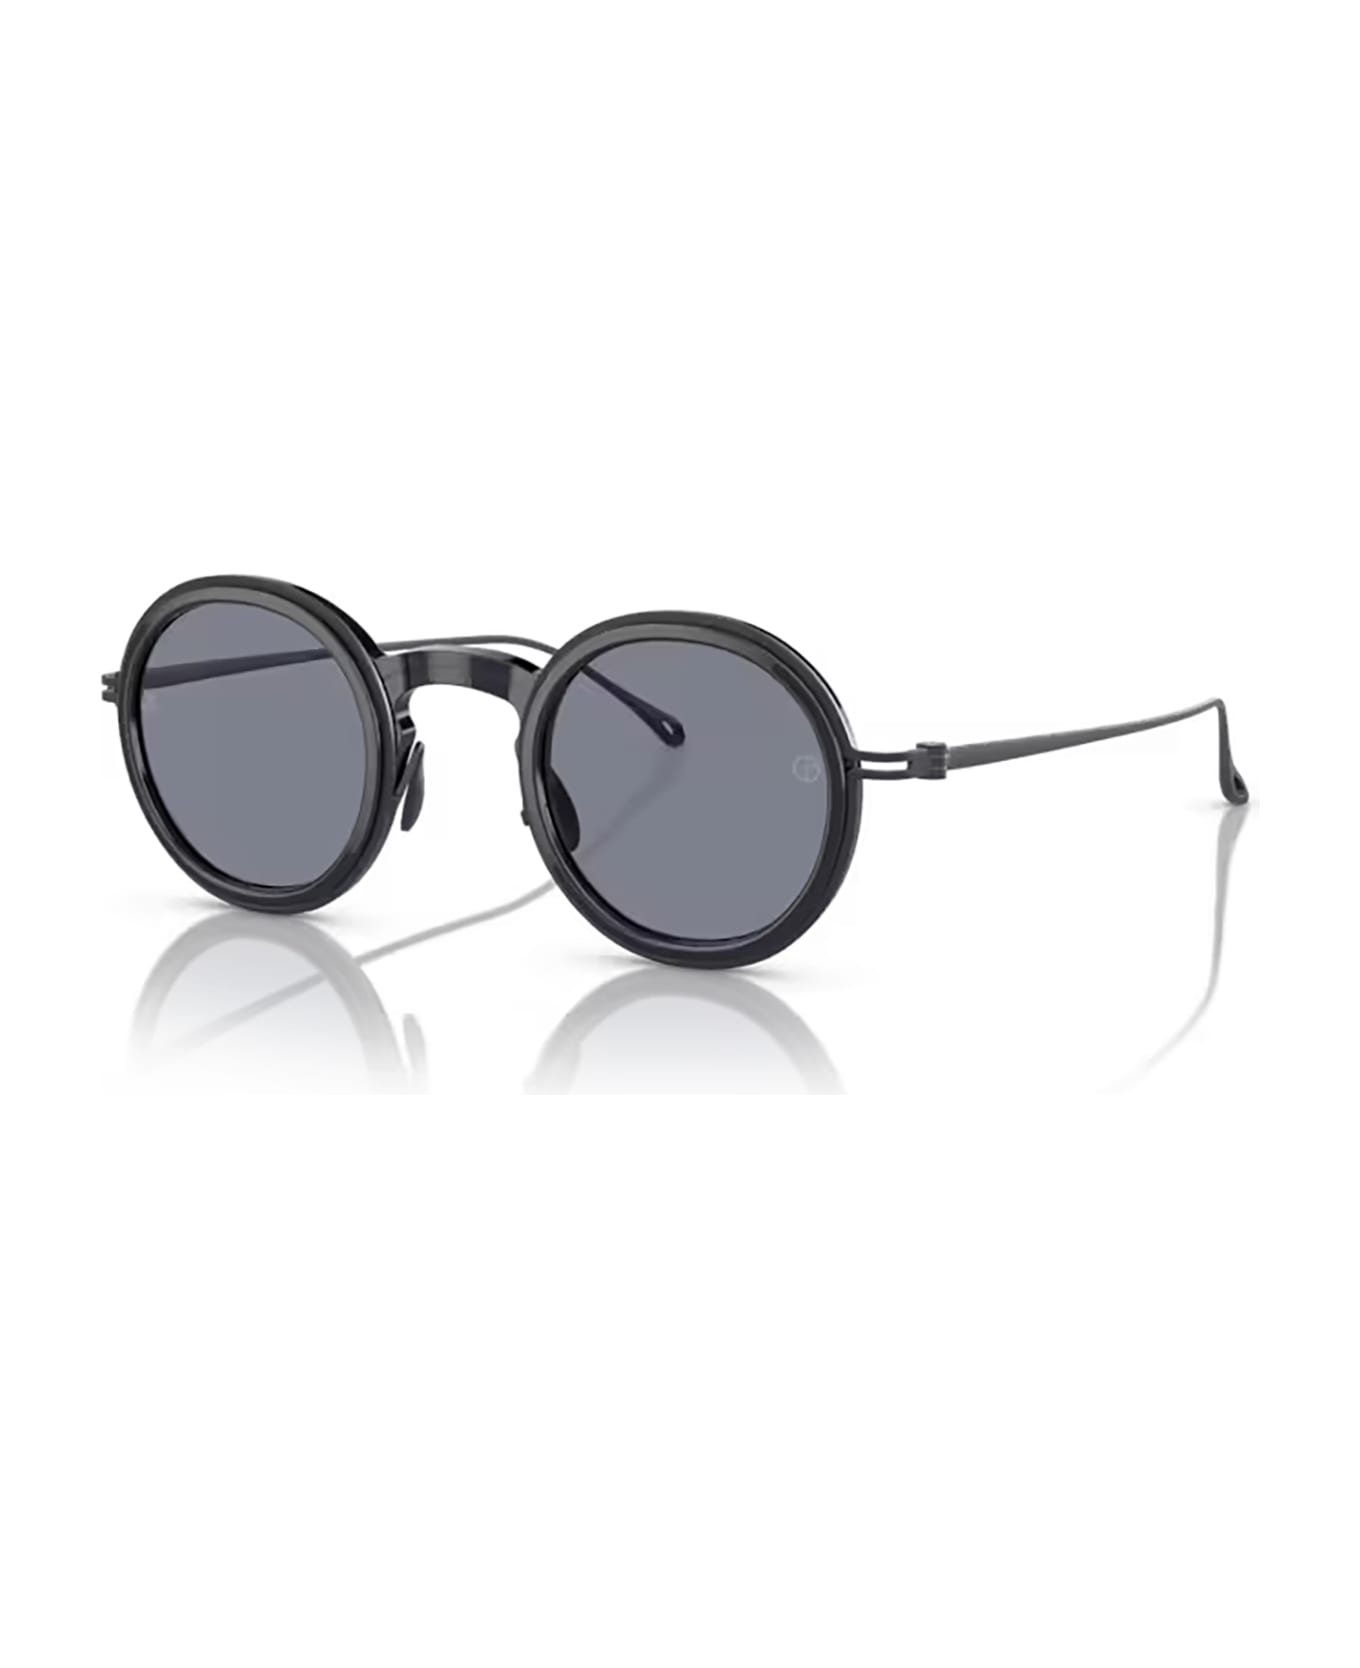 Giorgio Armani Ar6147t Shiny Transparent Blue Sunglasses - Shiny Transparent Blue